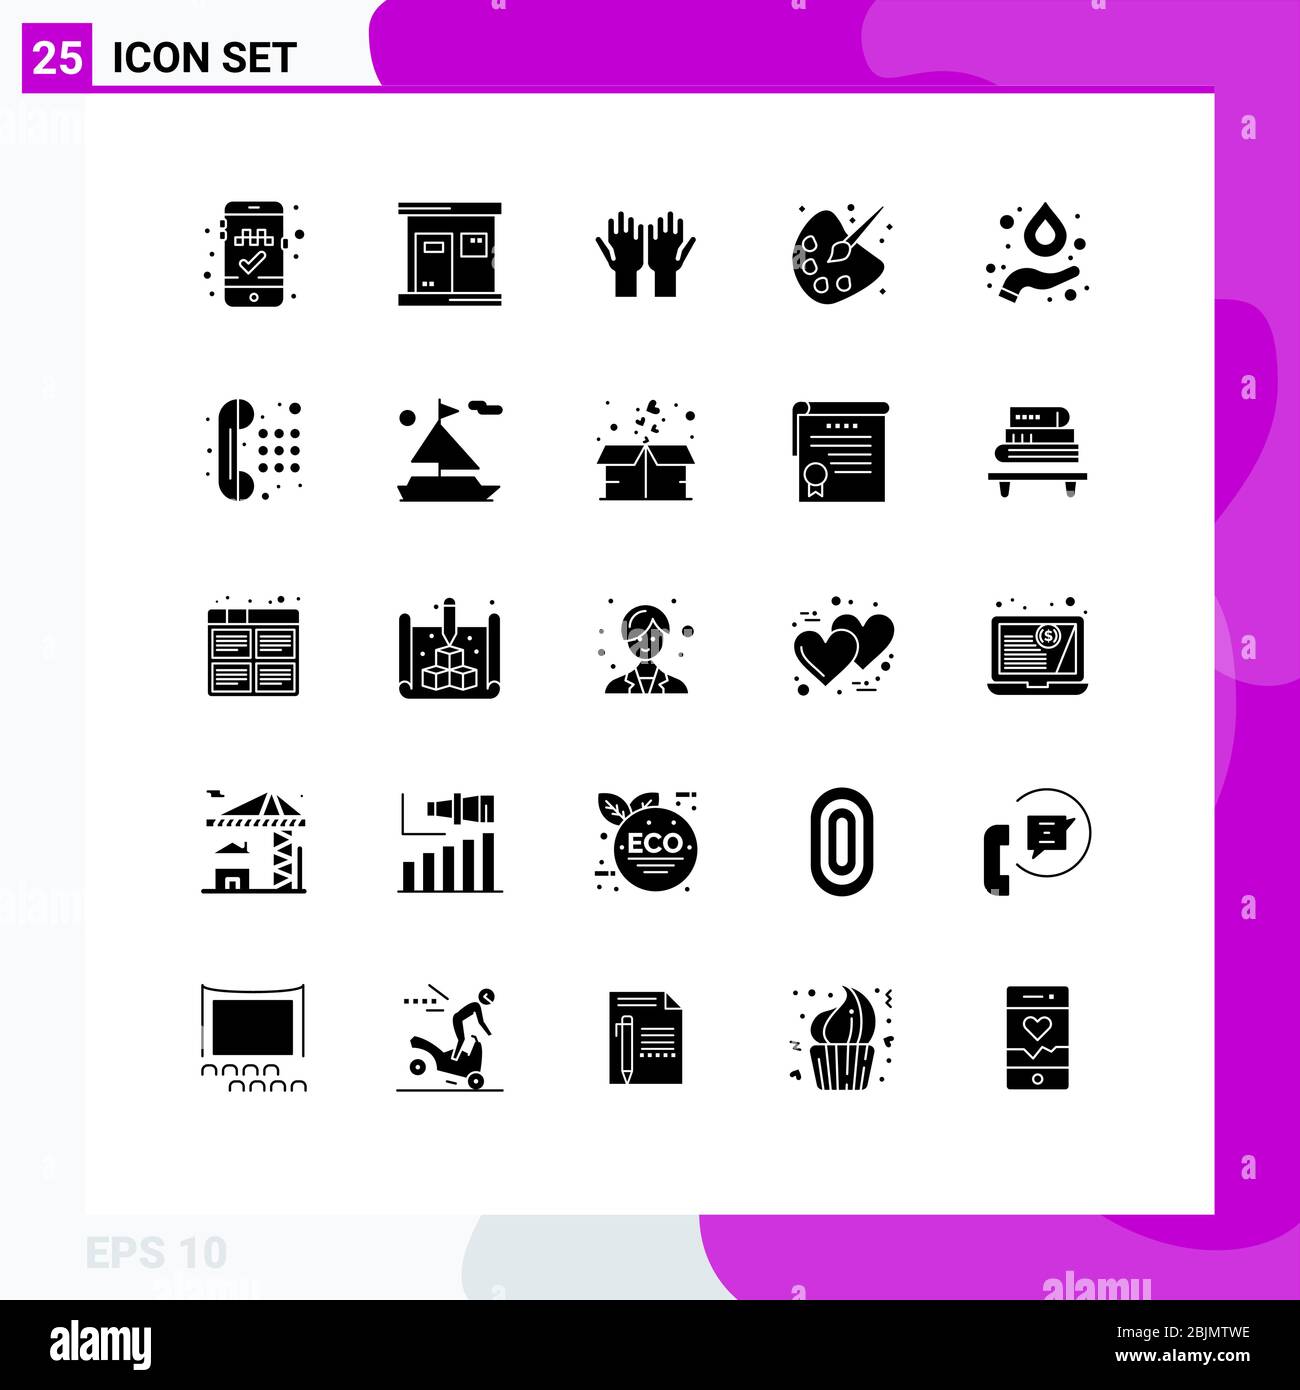 25 interfaccia utente Solid Glyph Pack di segni moderni e simboli di idrogeno, pittura, preghiera, istruzione, colore elementi di disegno vettoriale editabili Illustrazione Vettoriale